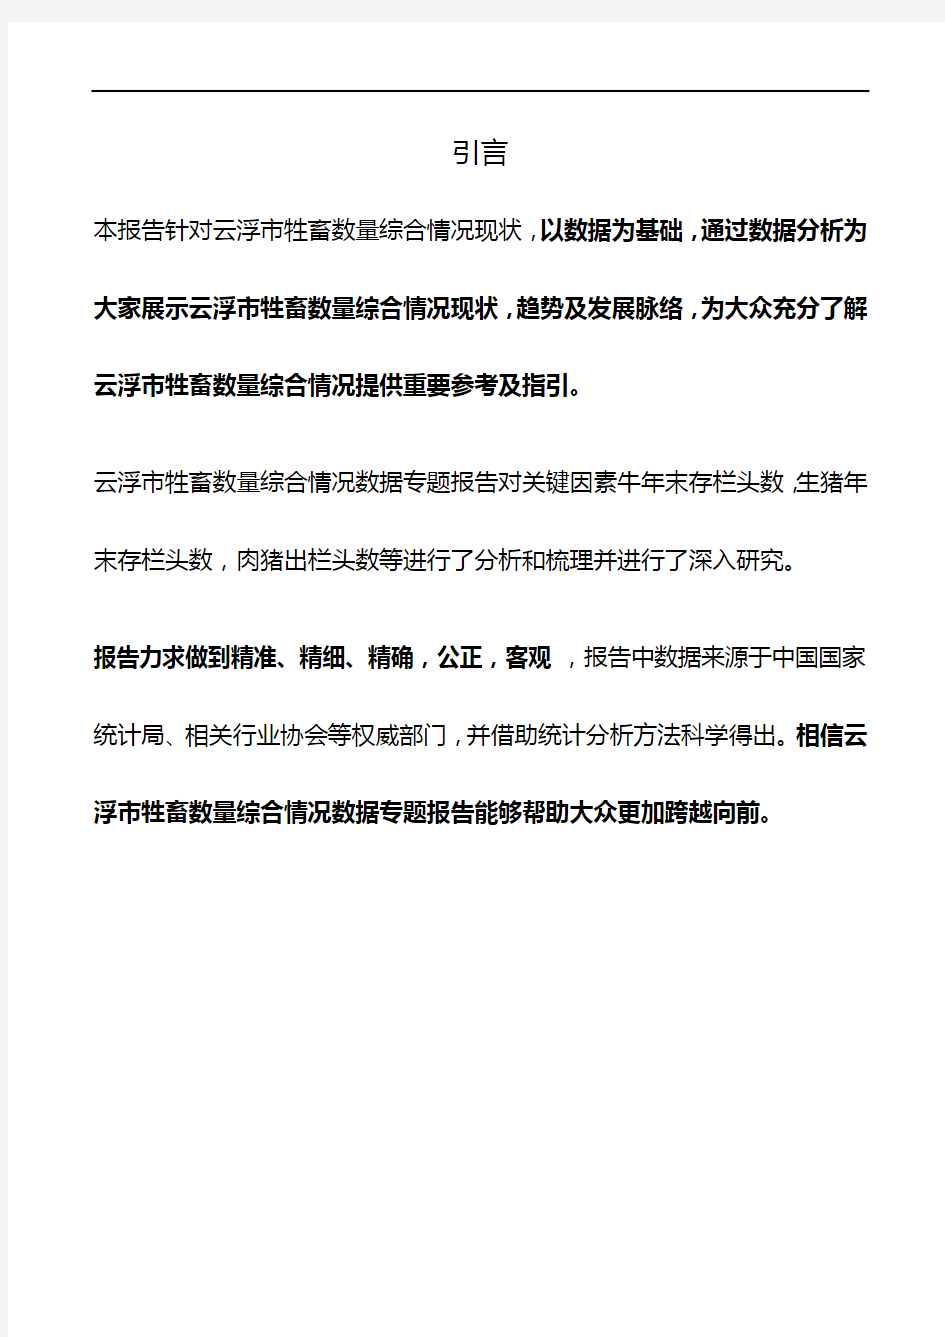 广东省云浮市牲畜数量综合情况数据专题报告2019版